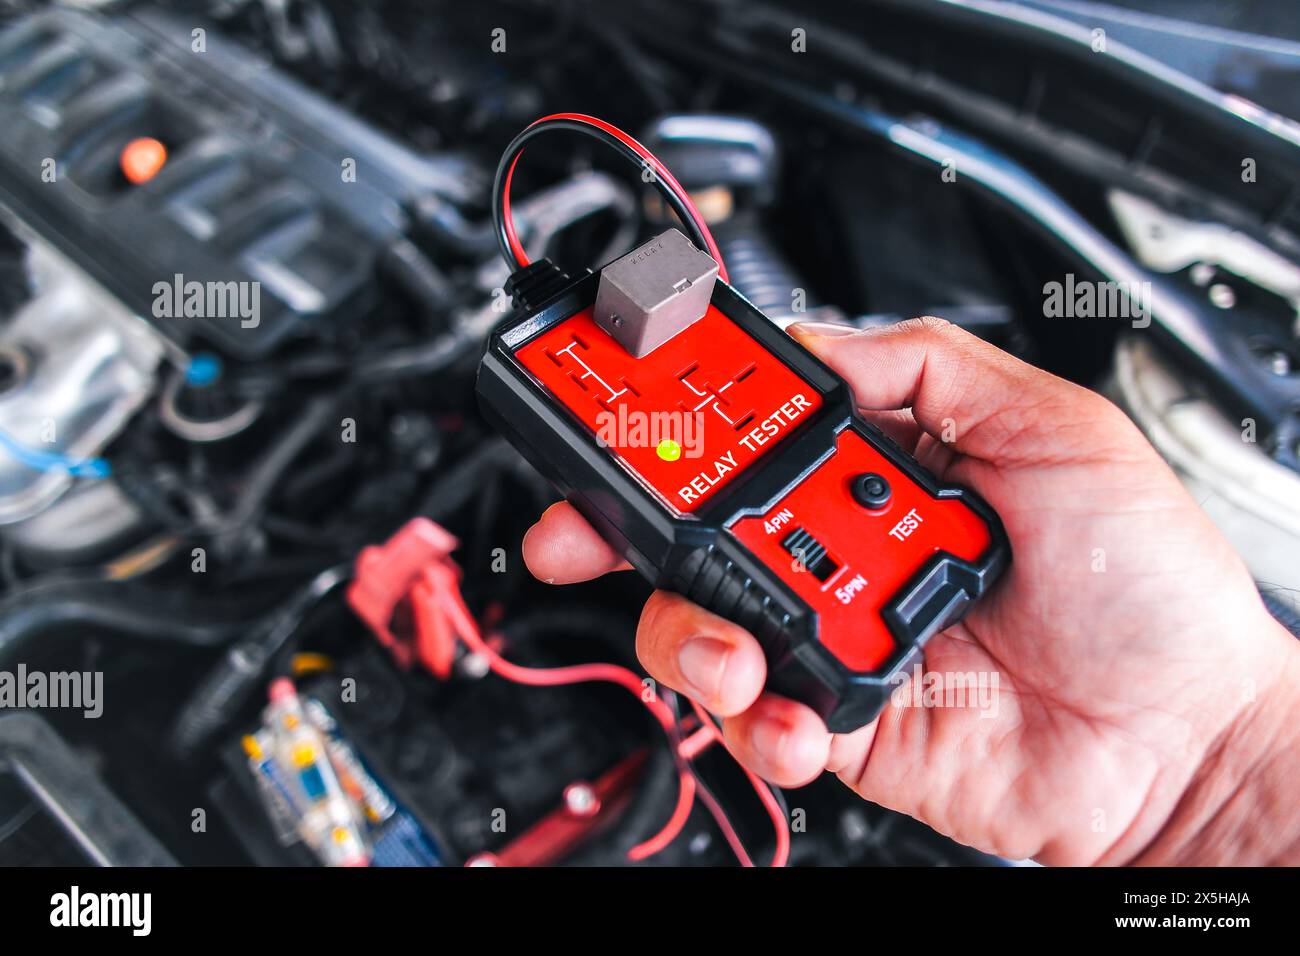 Test relè auto con un tester relè , tester relè in mano meccanico per test di sistema , concetto di manutenzione e riparazione auto Foto Stock